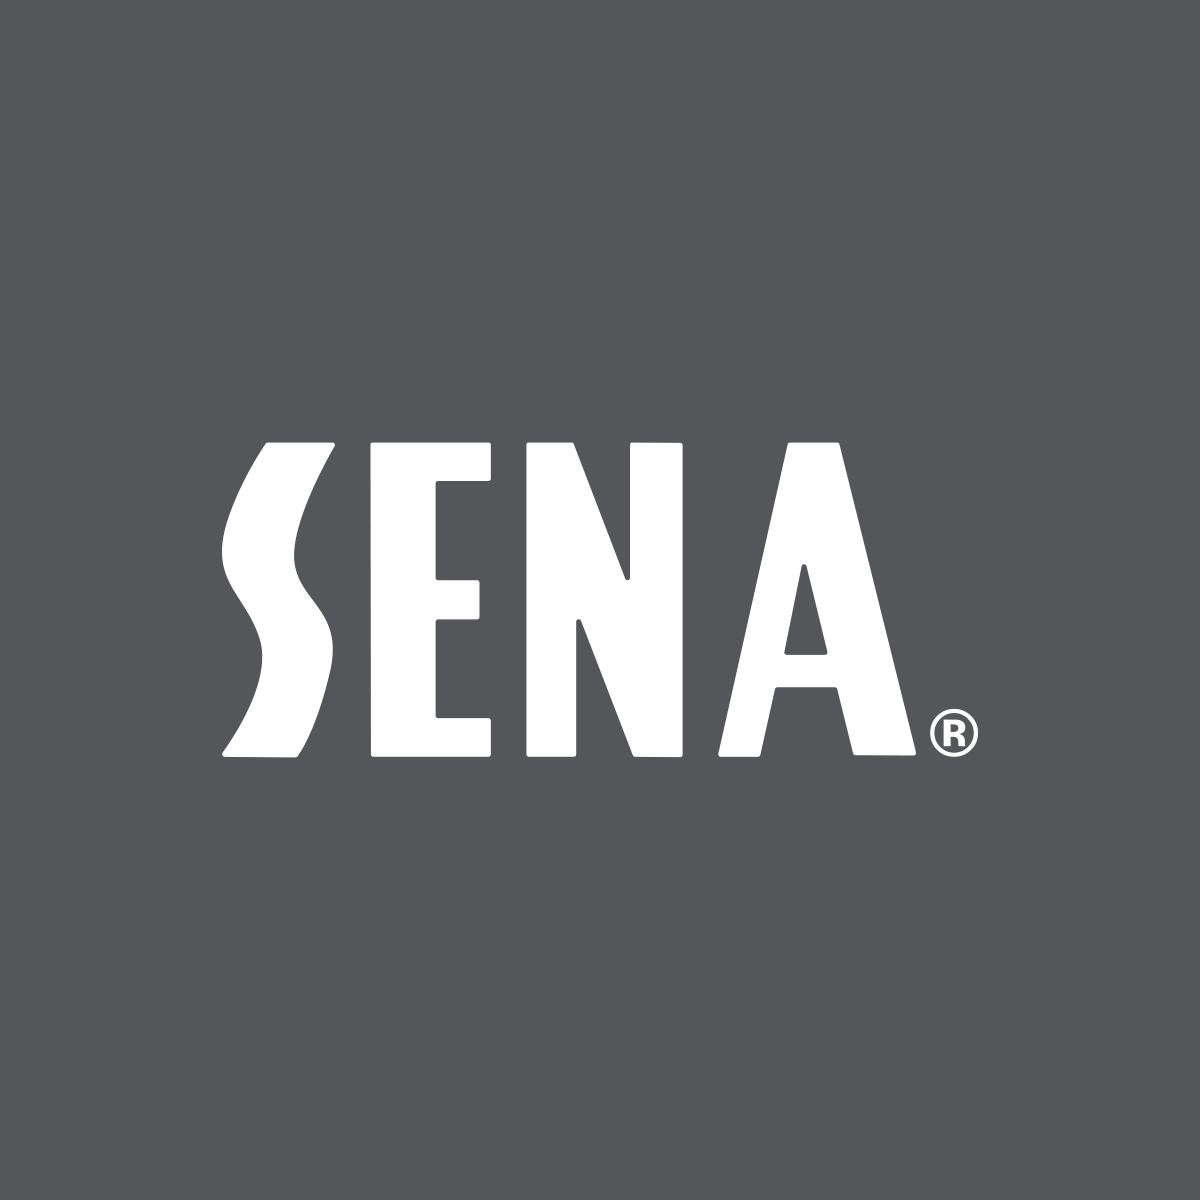 Company logo of SENA Cases